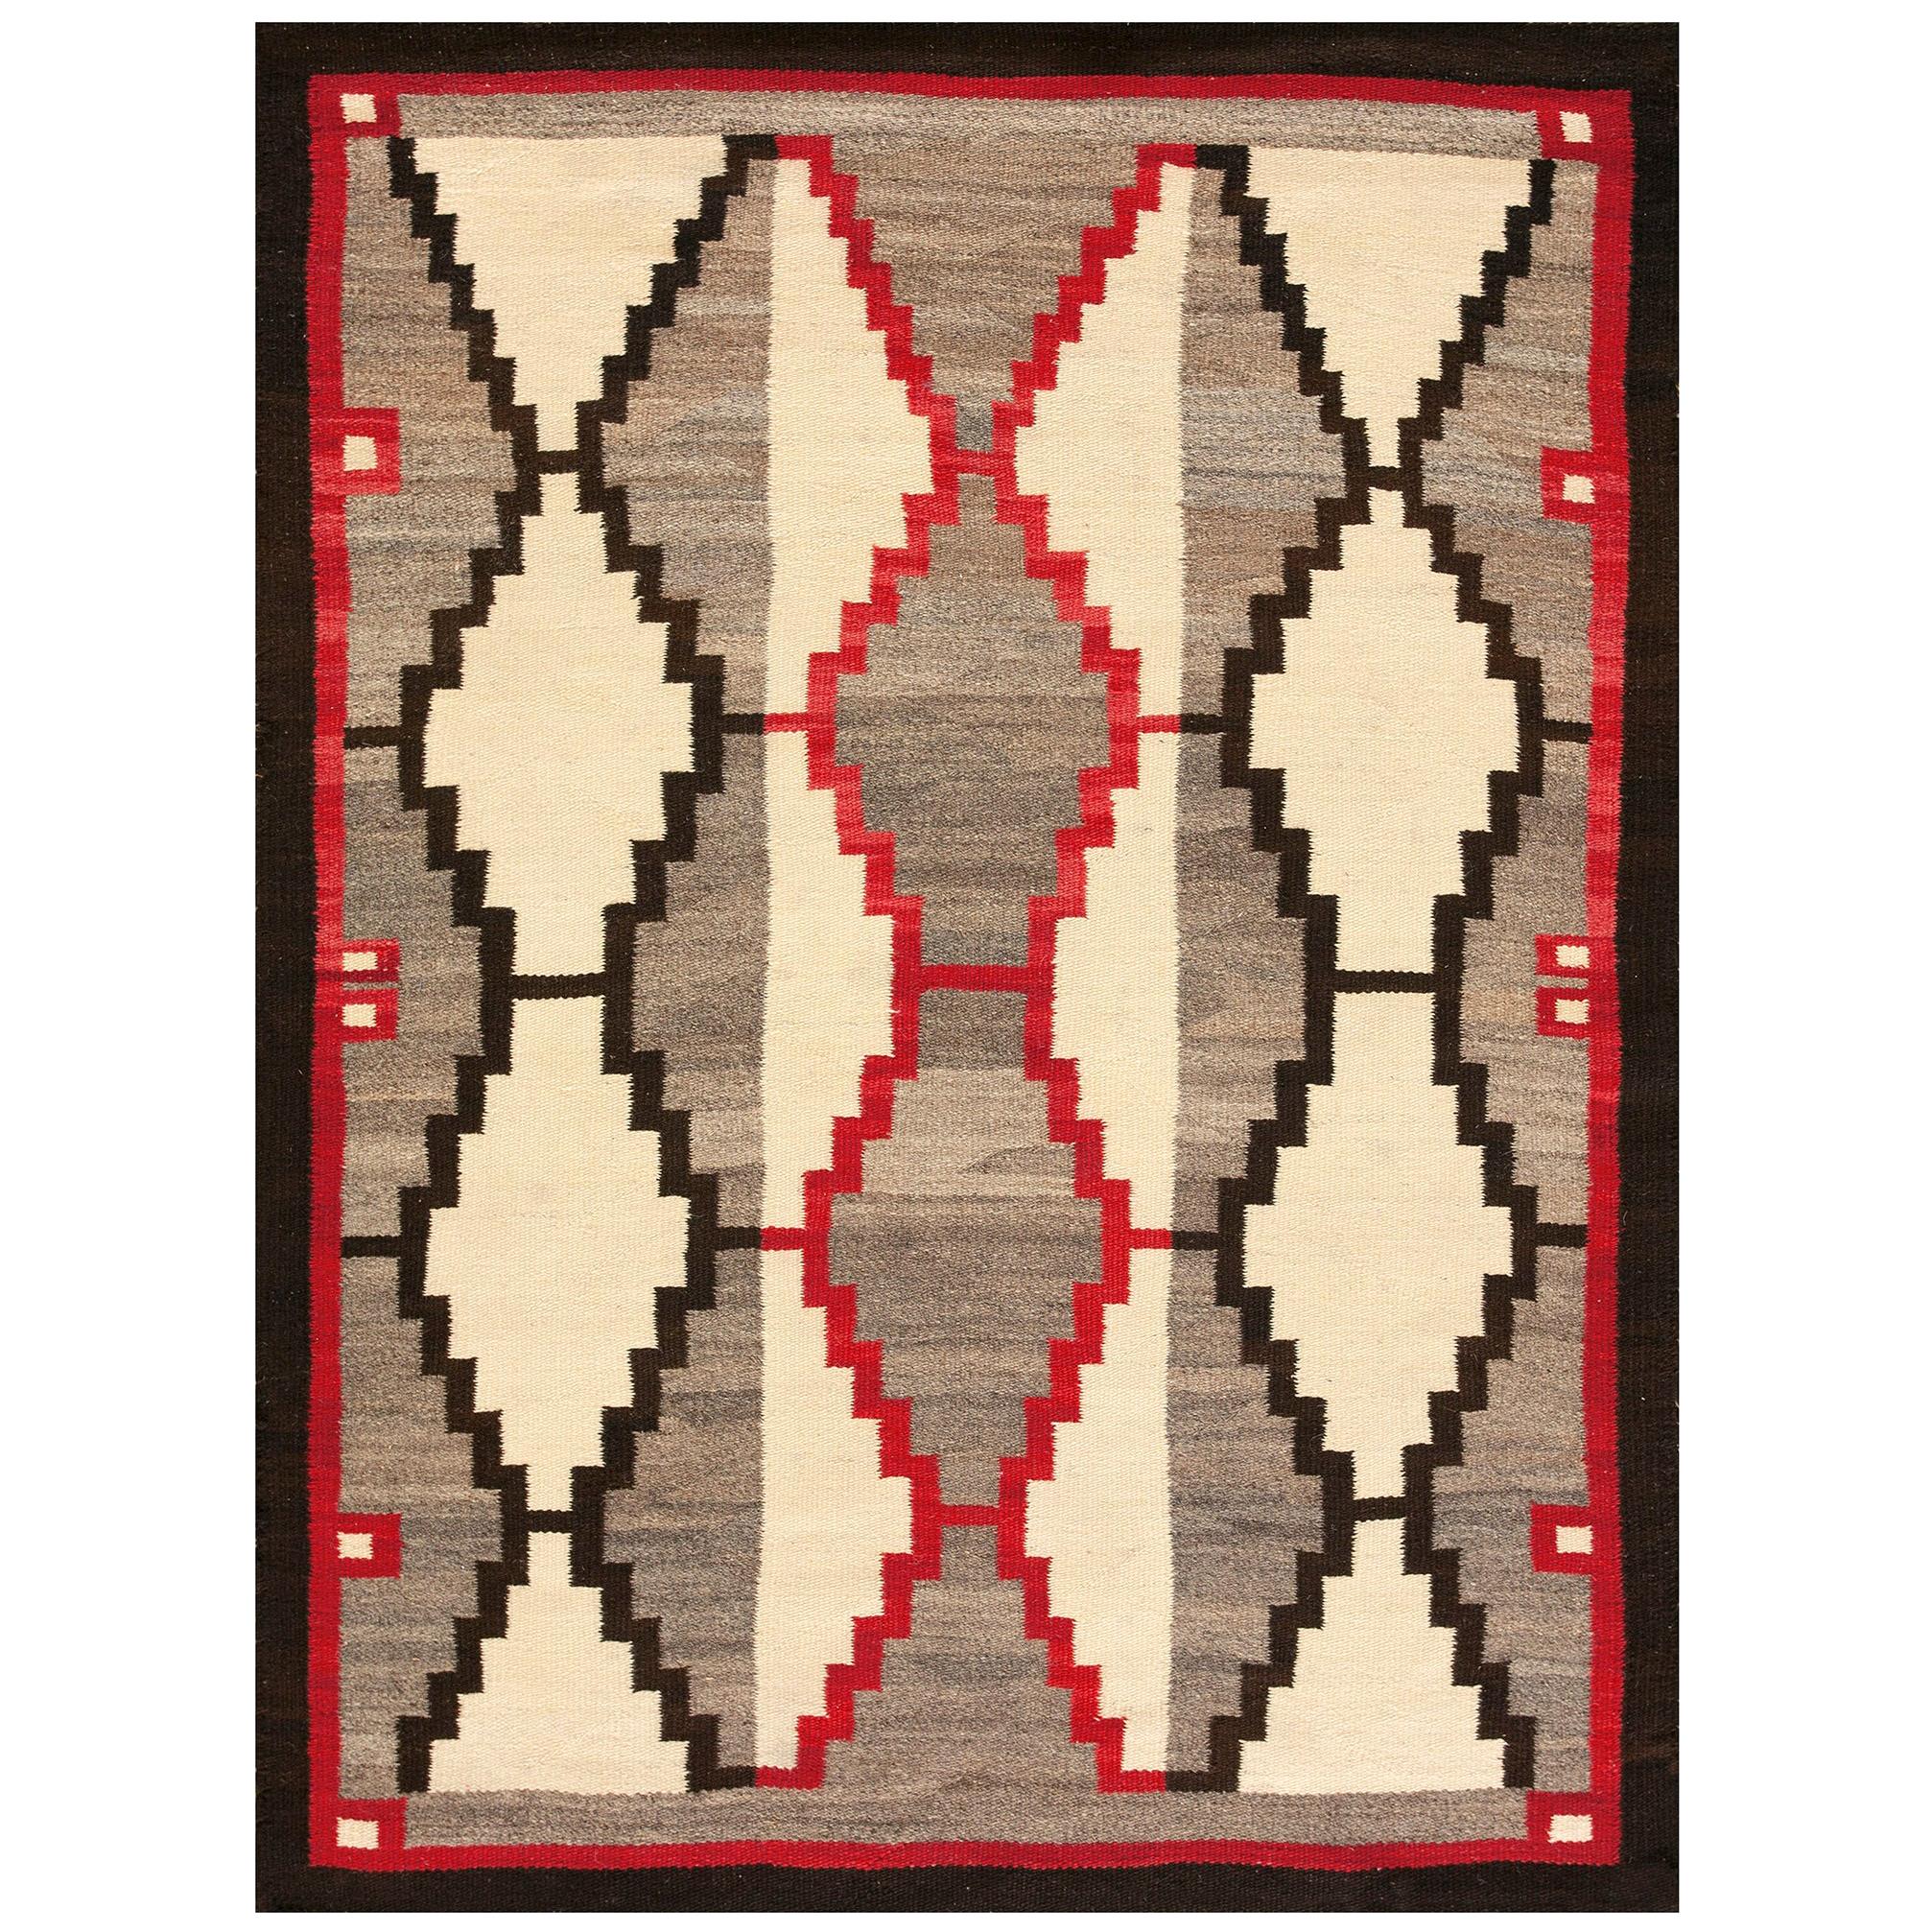 Amerikanischer Navajo-Teppich aus den 1930er Jahren (107 x 137 cm)